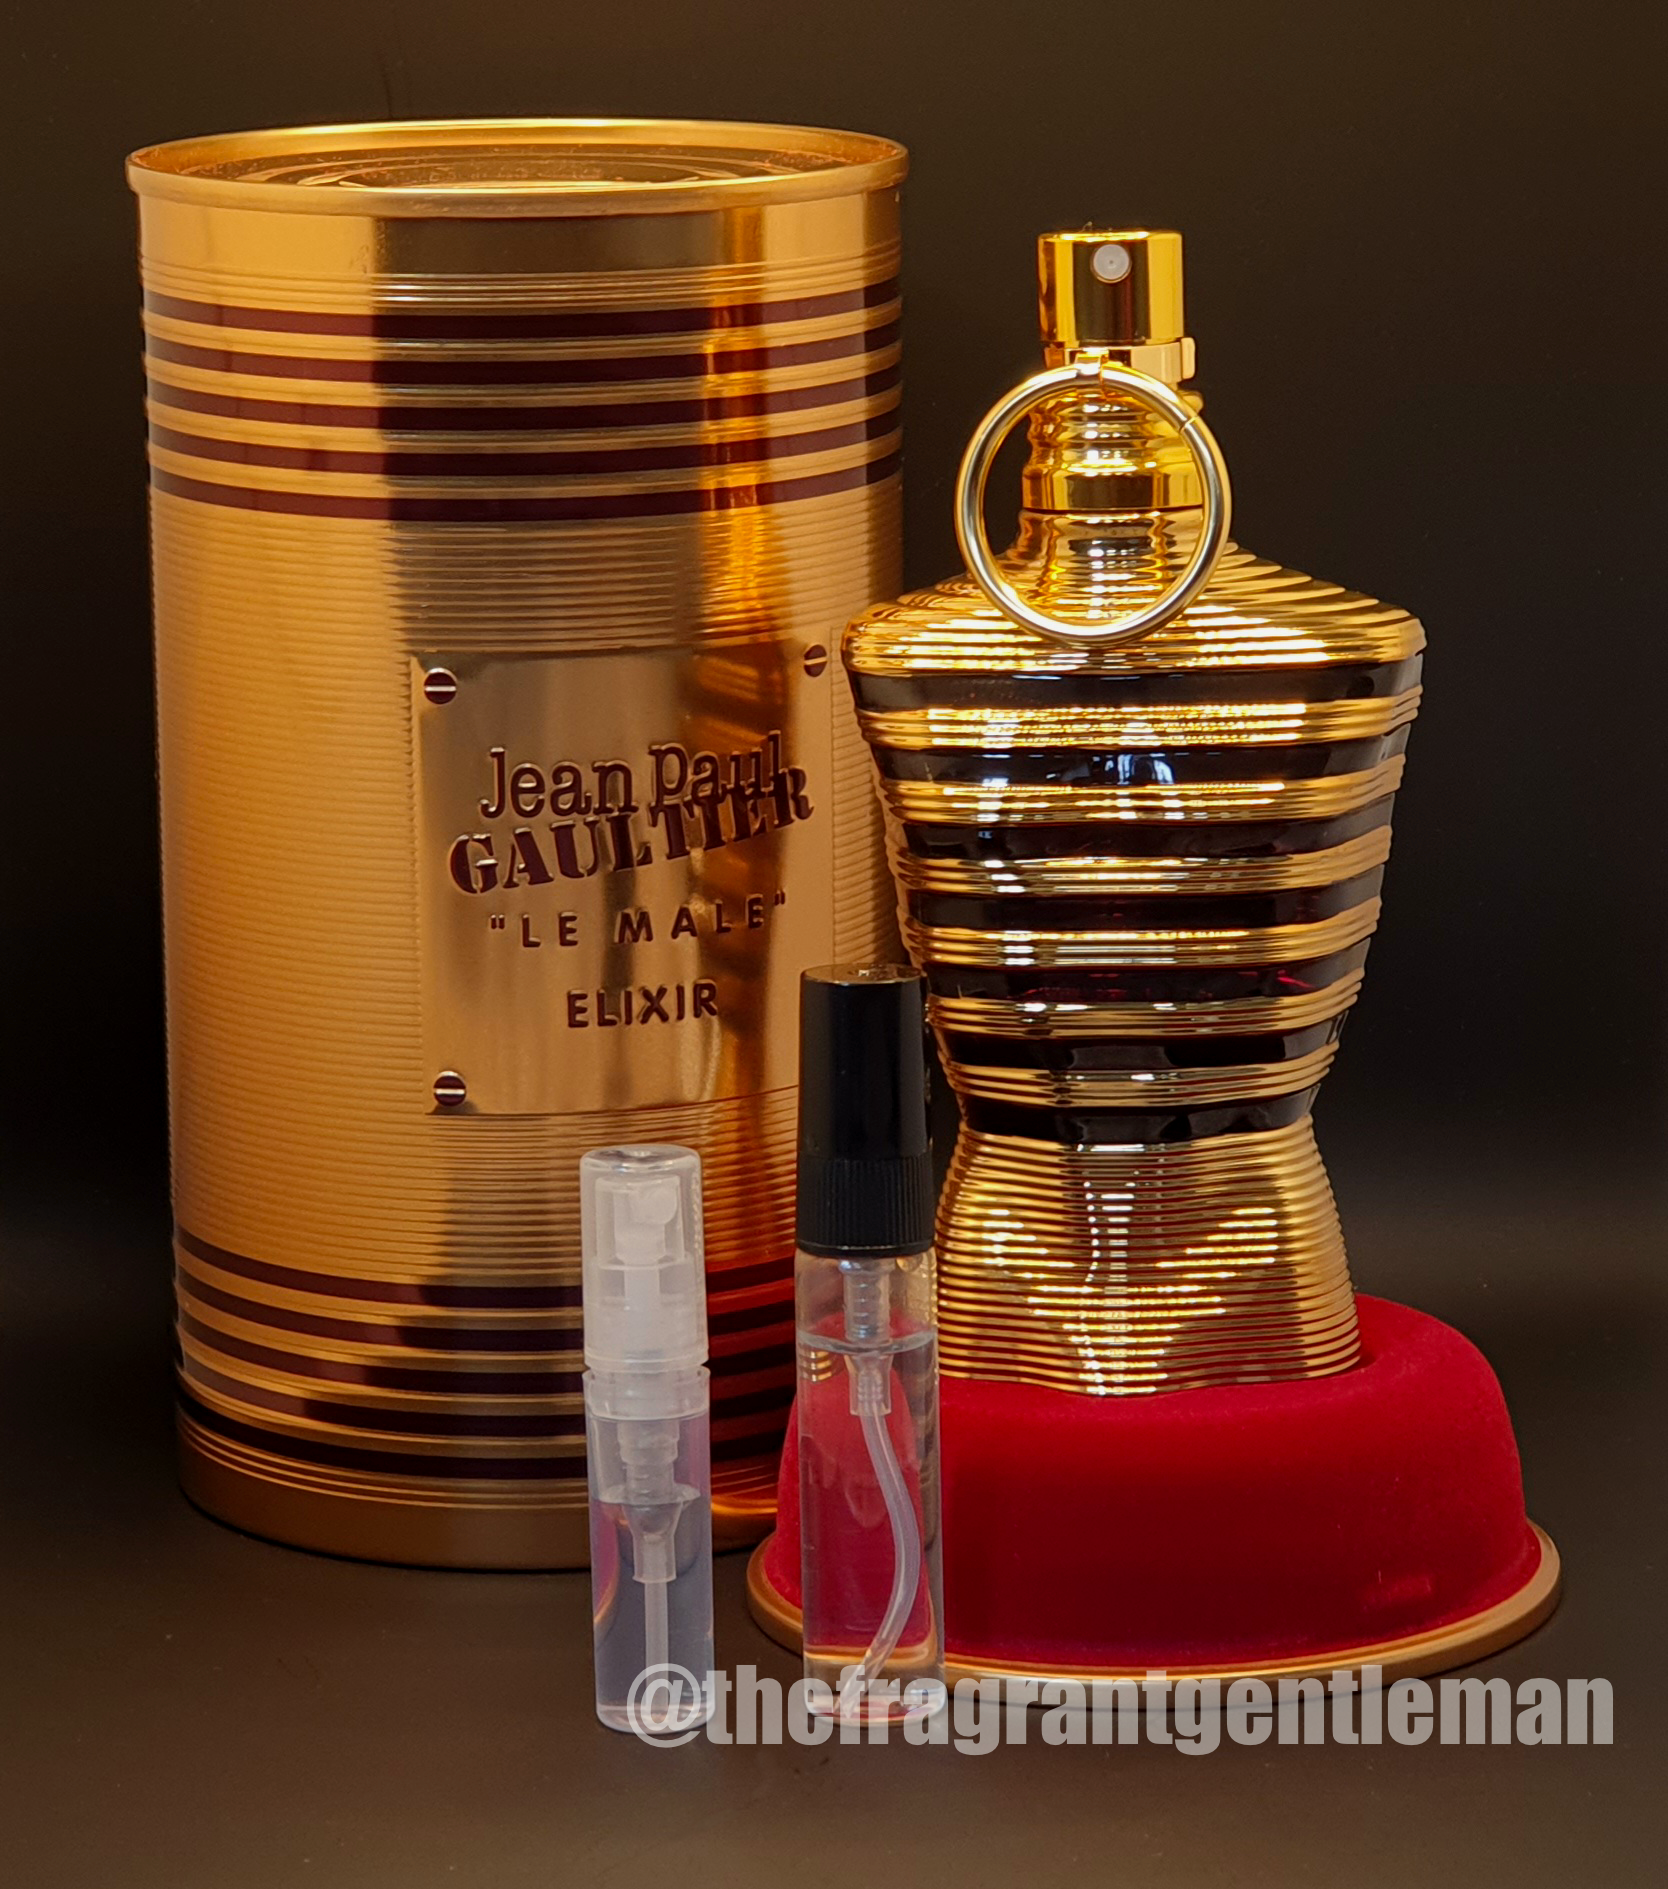 Jean Paul Gaultier Le Beau, Fragrance Sample